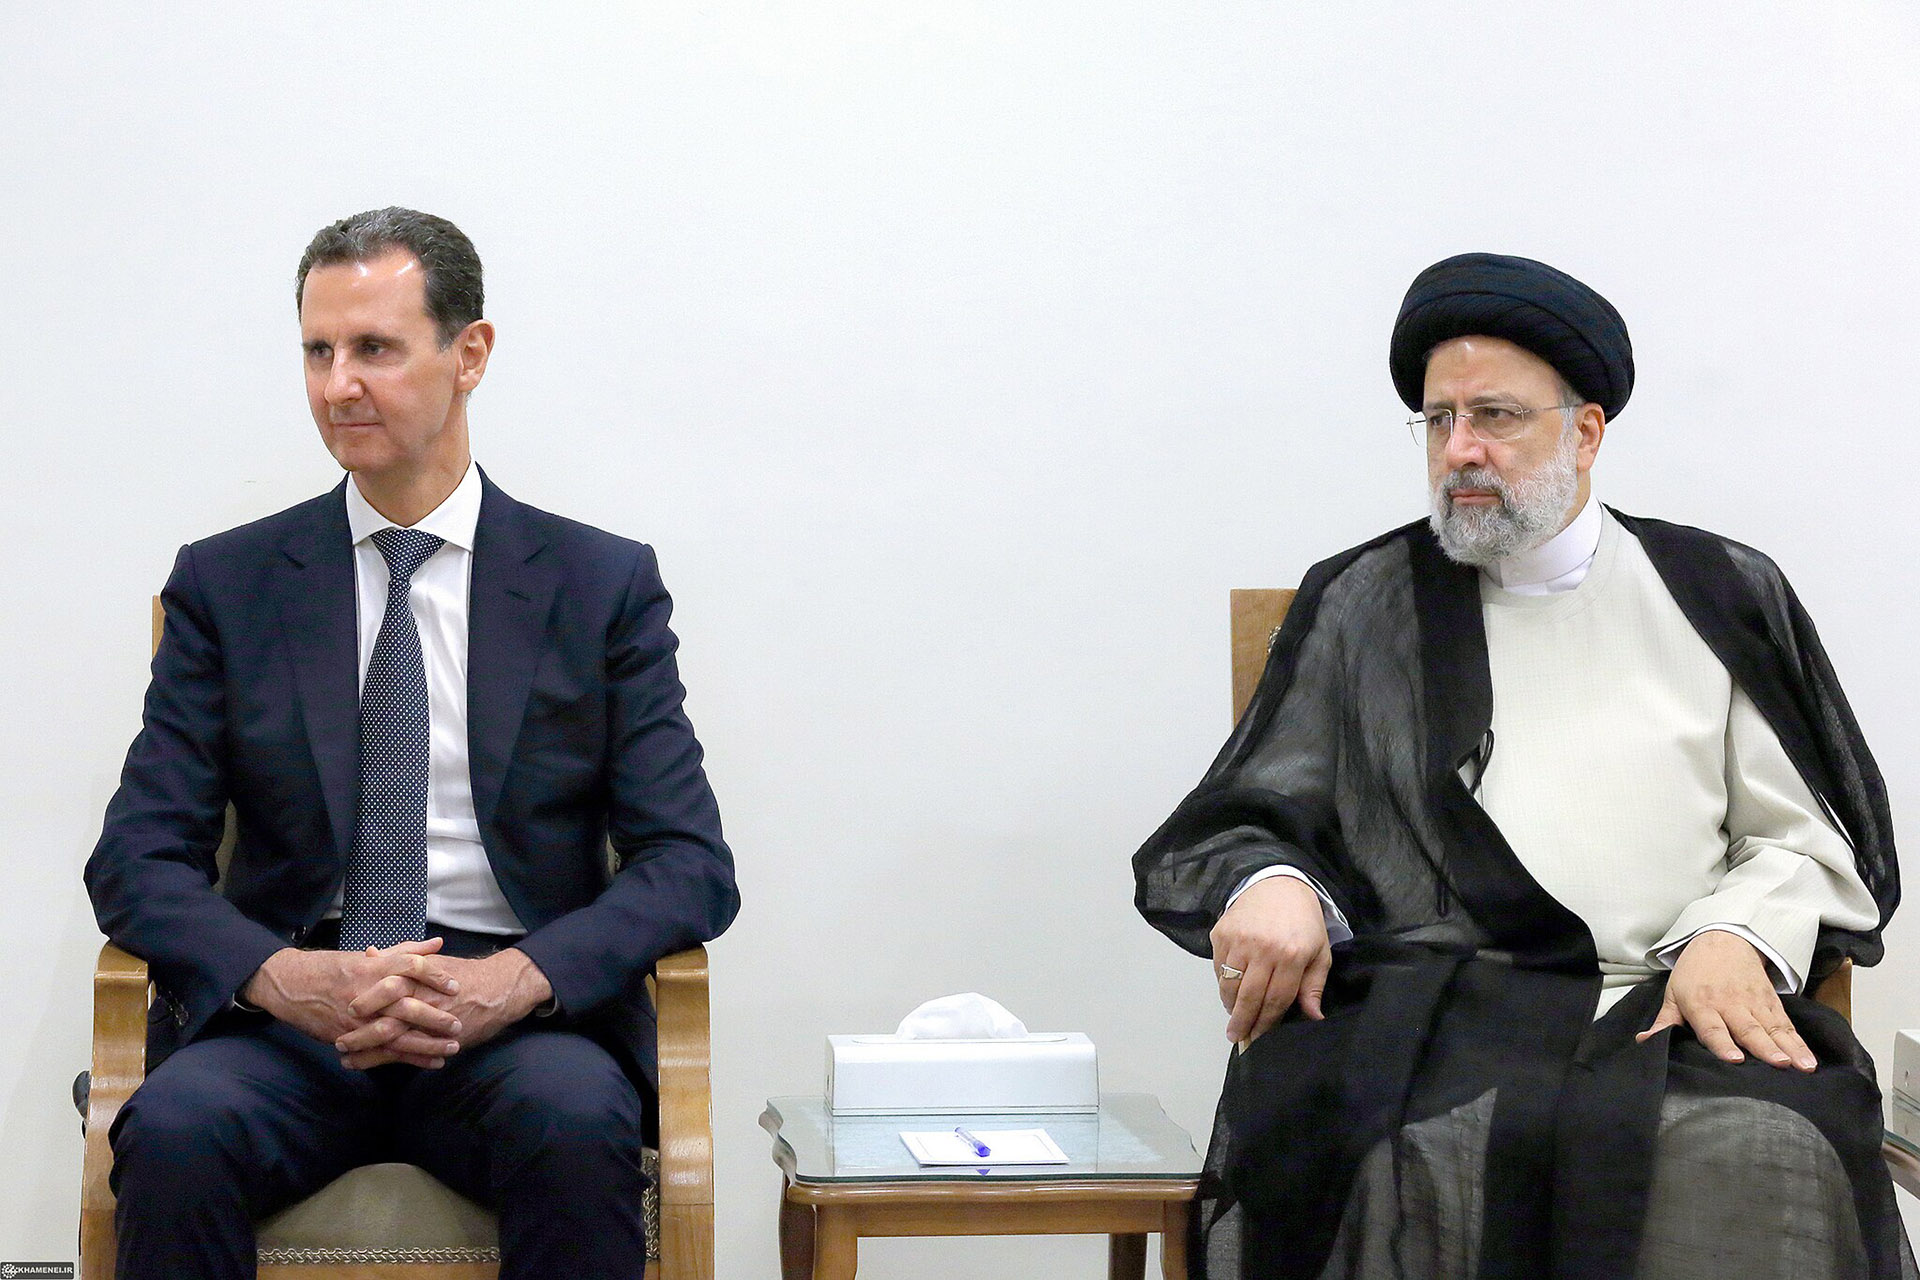 Bild: Khamenei.ir, Khamenei meets with Bashar al-Assad E, CC BY 4.0, via Wikimedia Commons (Bildgröße geändert)